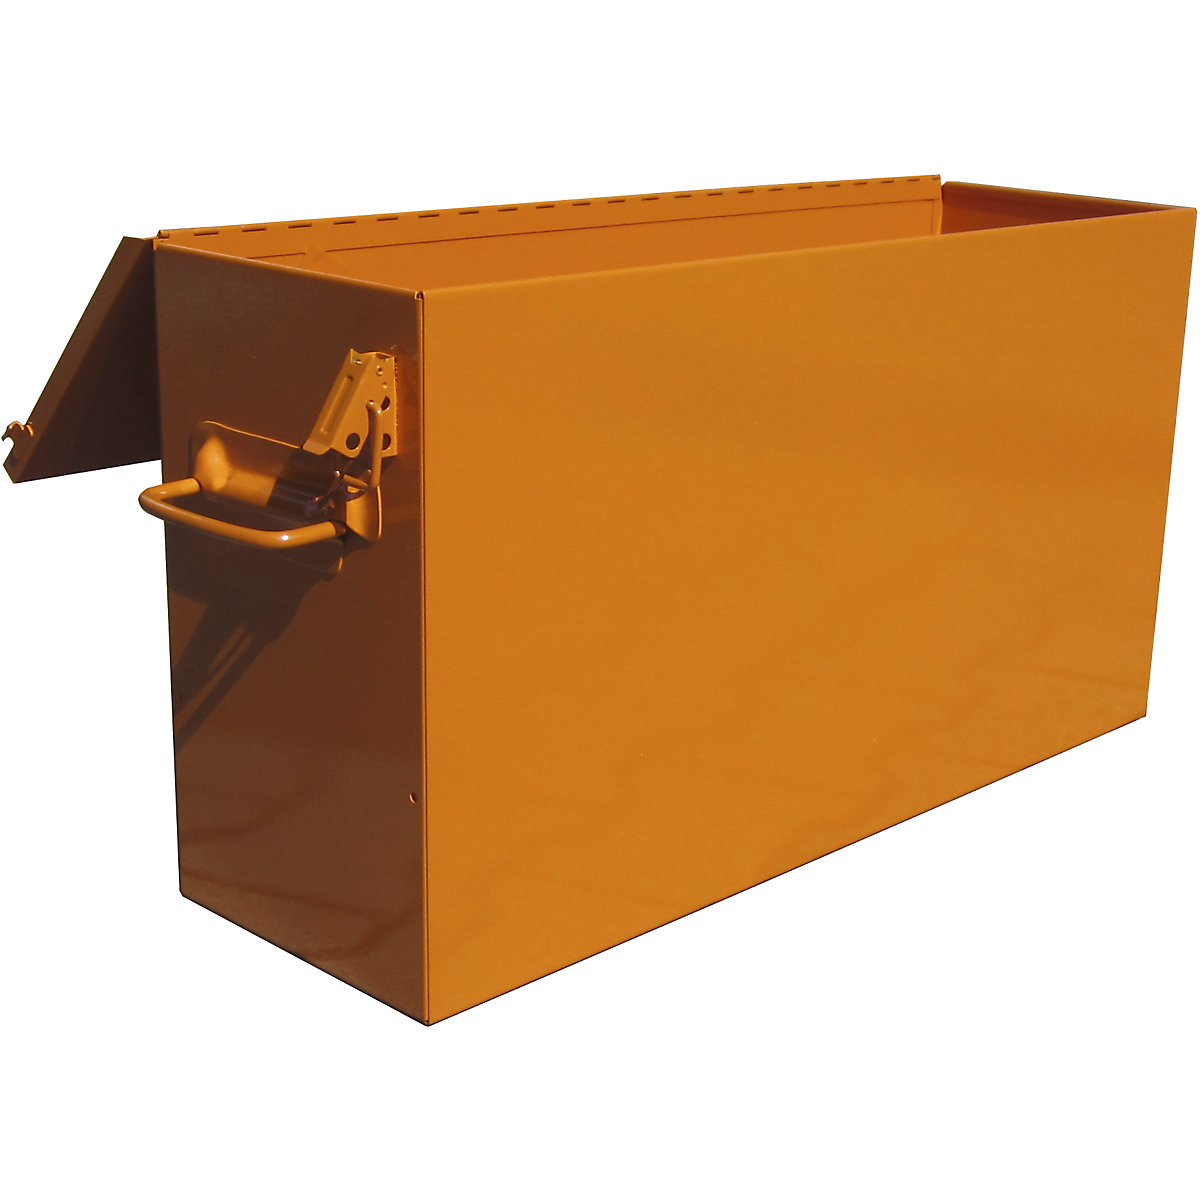 Kutija za vučnu dizalicu, u narančastoj boji, za vučnu dizalicu nosivosti 1600 kg